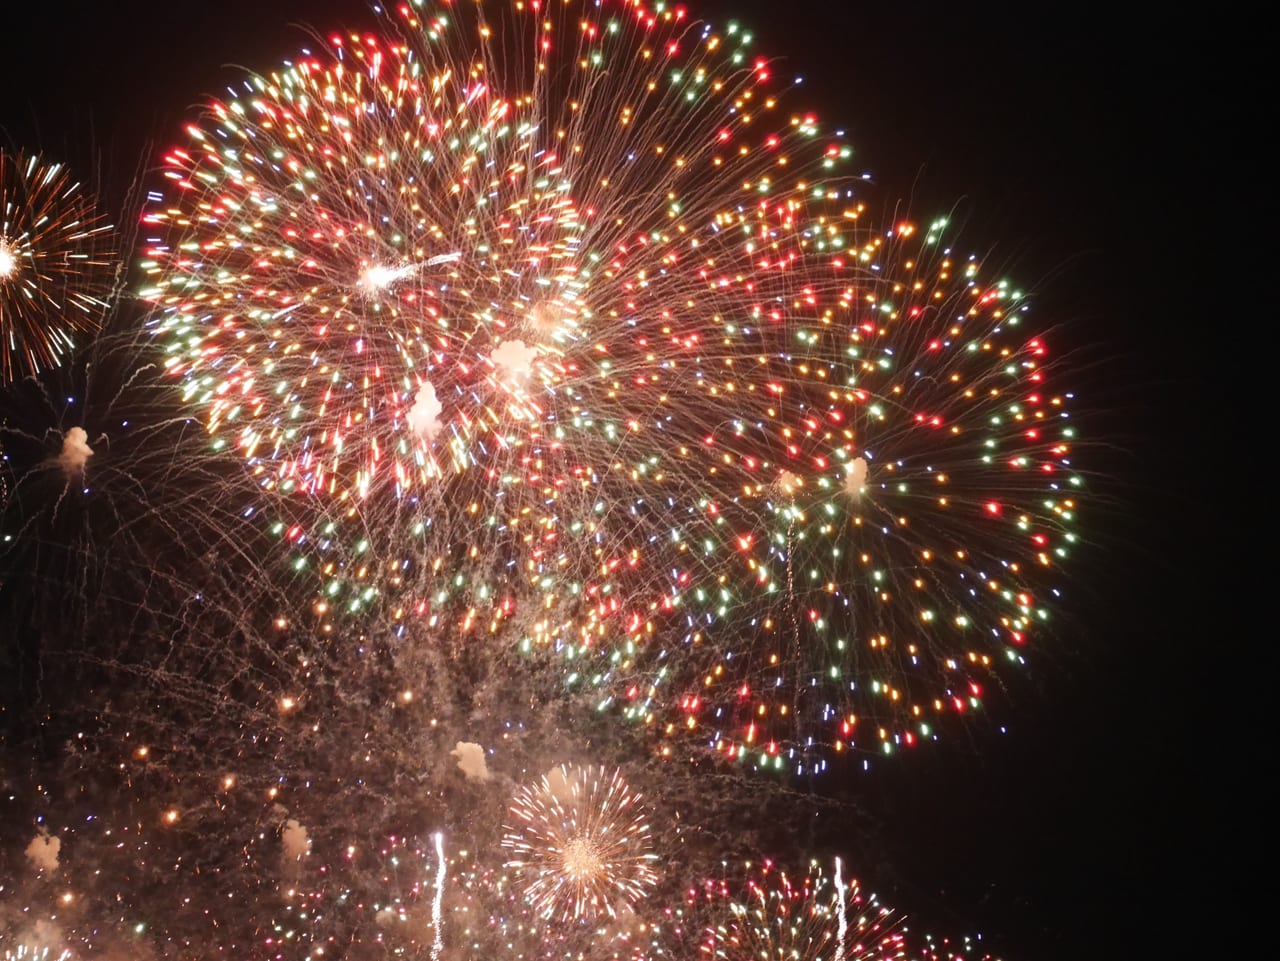 大阪市東住吉区 みんなは見えた 21年8月8日 長居公園で打ち上げ花火が上がった模様です 号外net 住吉区 東住吉区